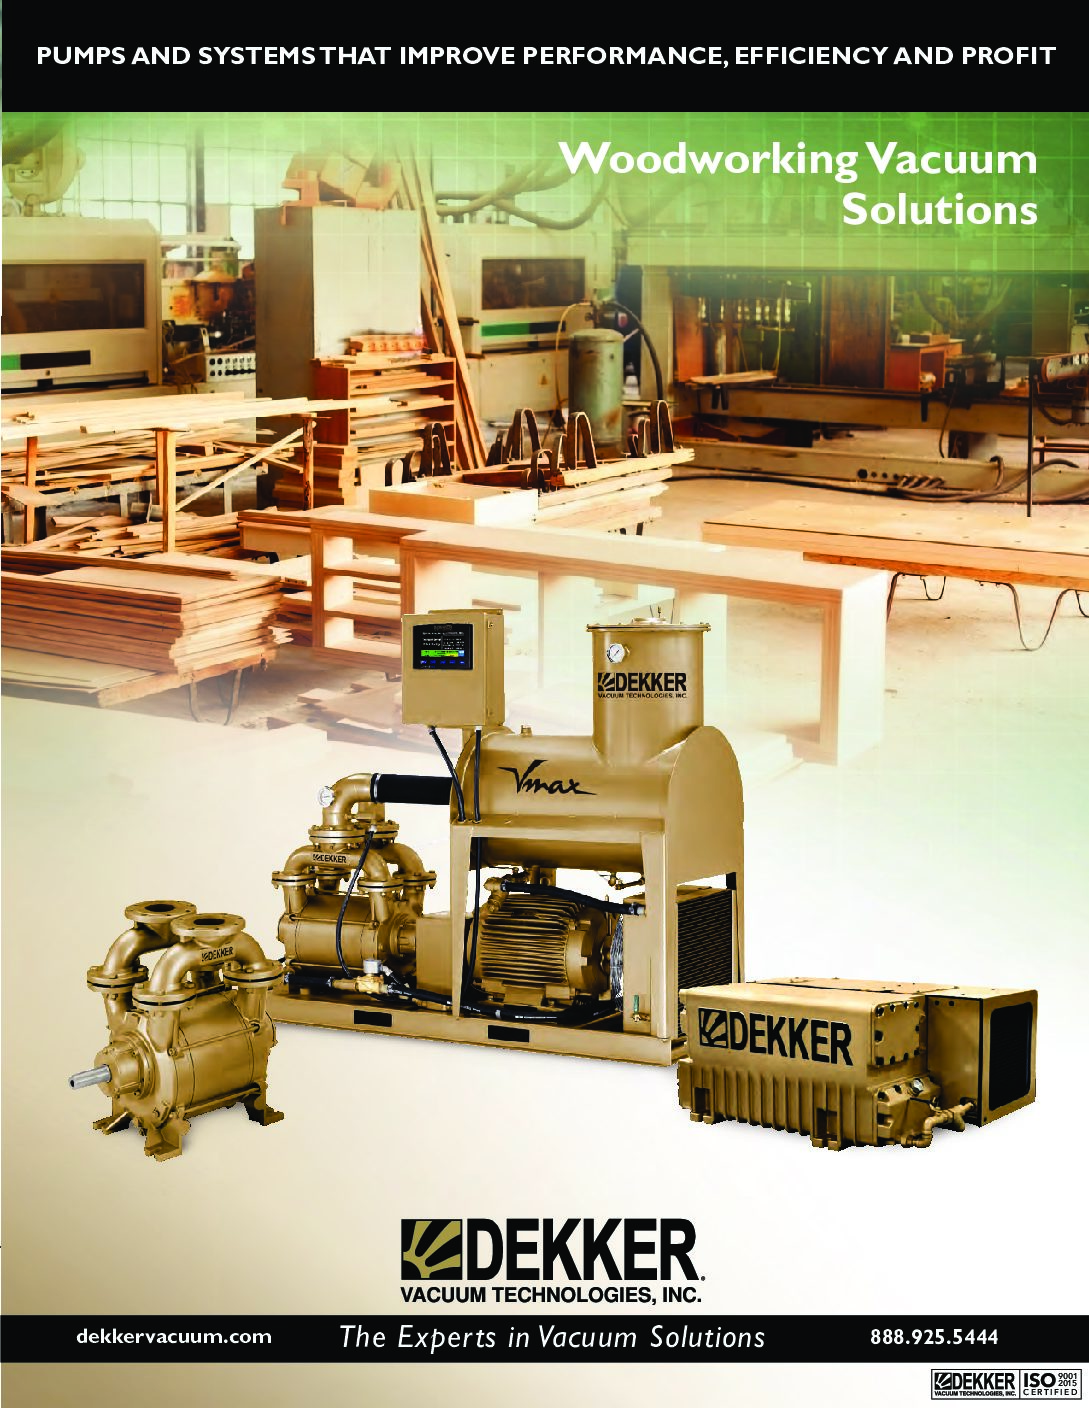 Dekker Woodworking Vacuum Solutions